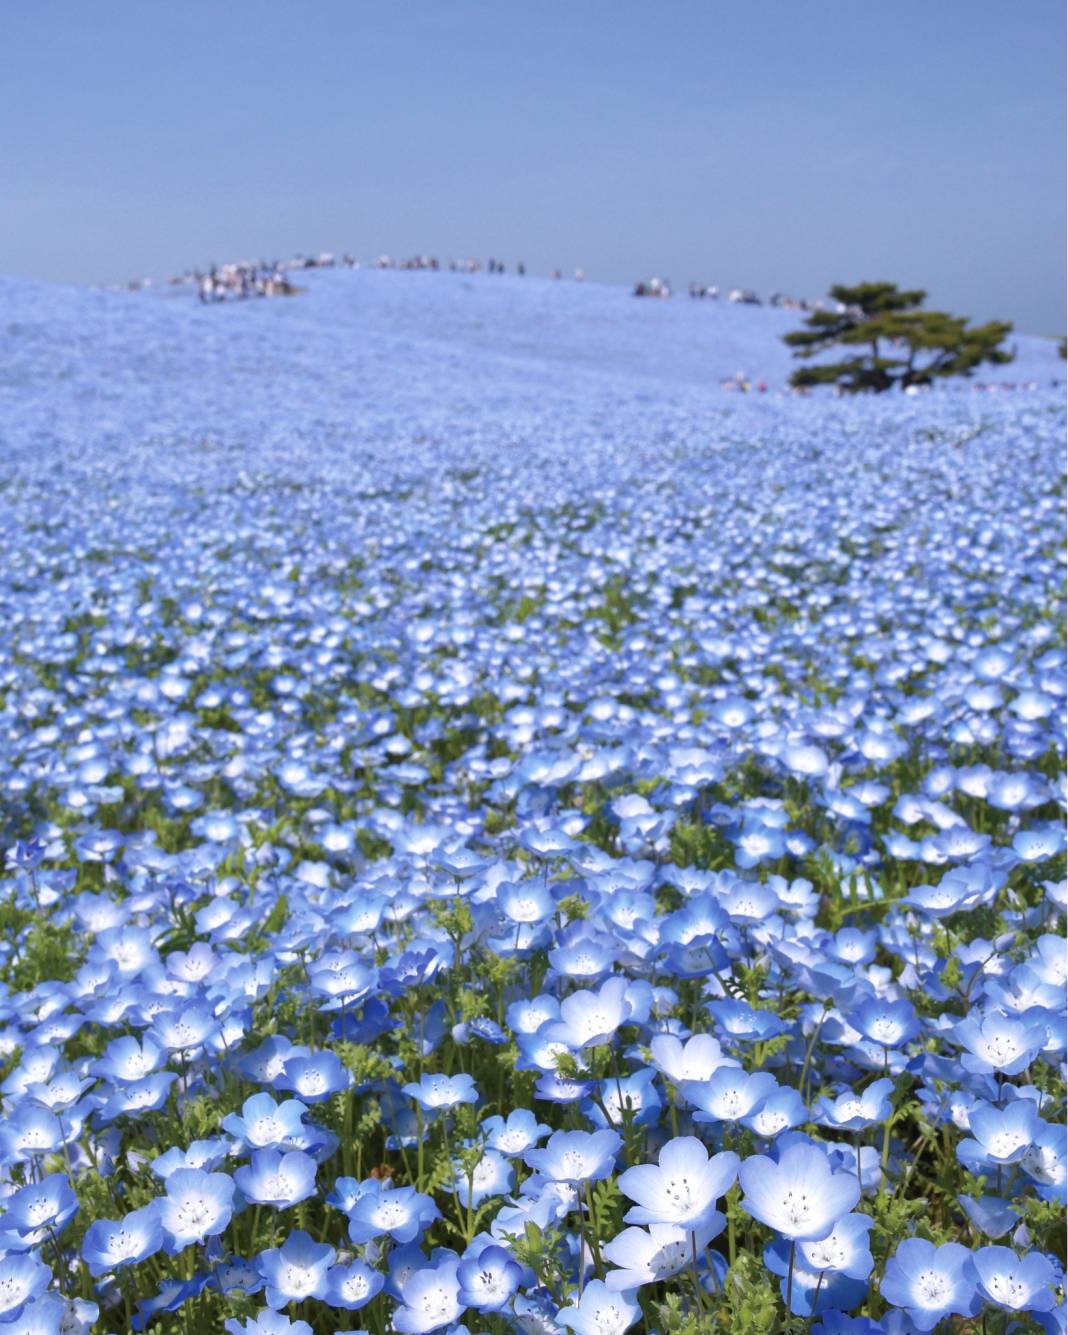 Japon parkında görsel şölen: Mavi özlem çiçeğinin mevsimi geldi 2